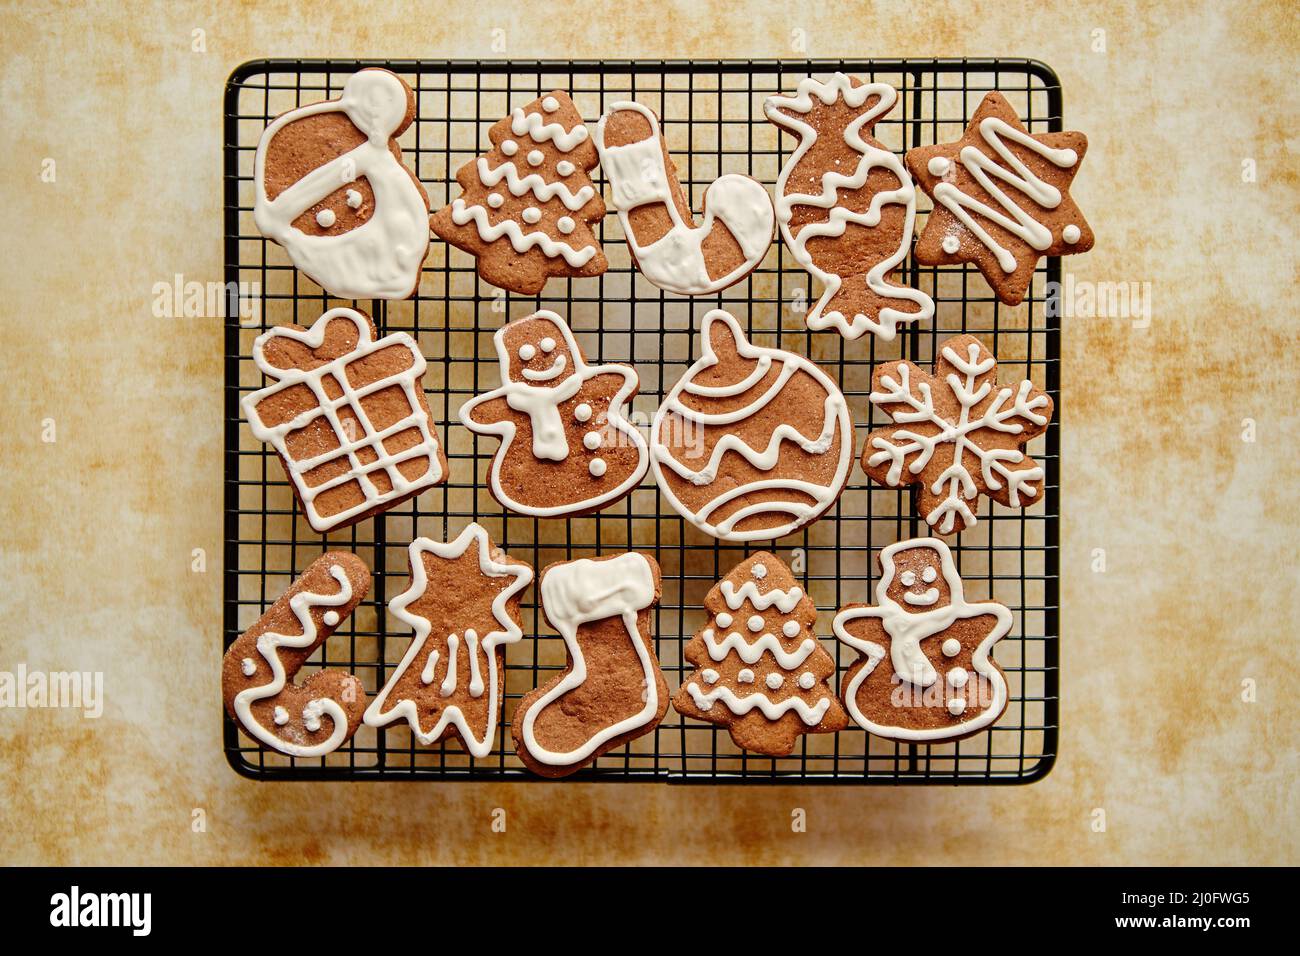 Freschi di forno a forma di Natale gingerbread cookies posto sulla griglia di acciaio Foto Stock